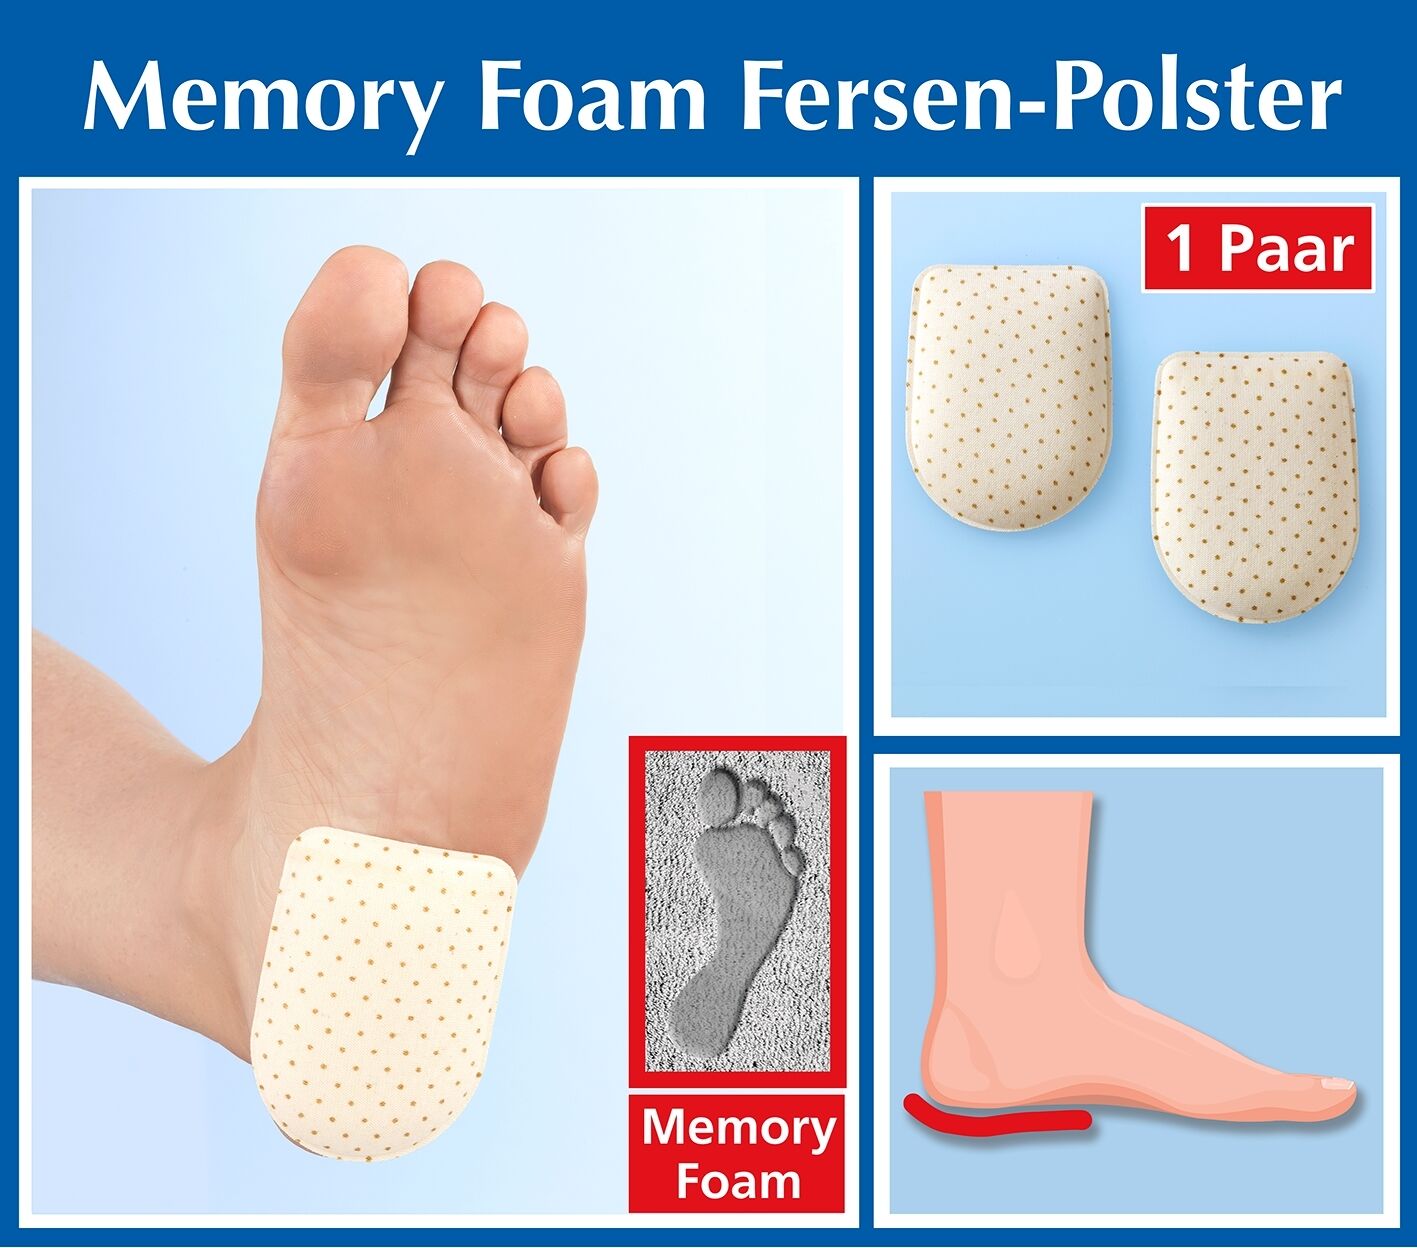 Memory Foam Fersen-Polster, 1 Paar